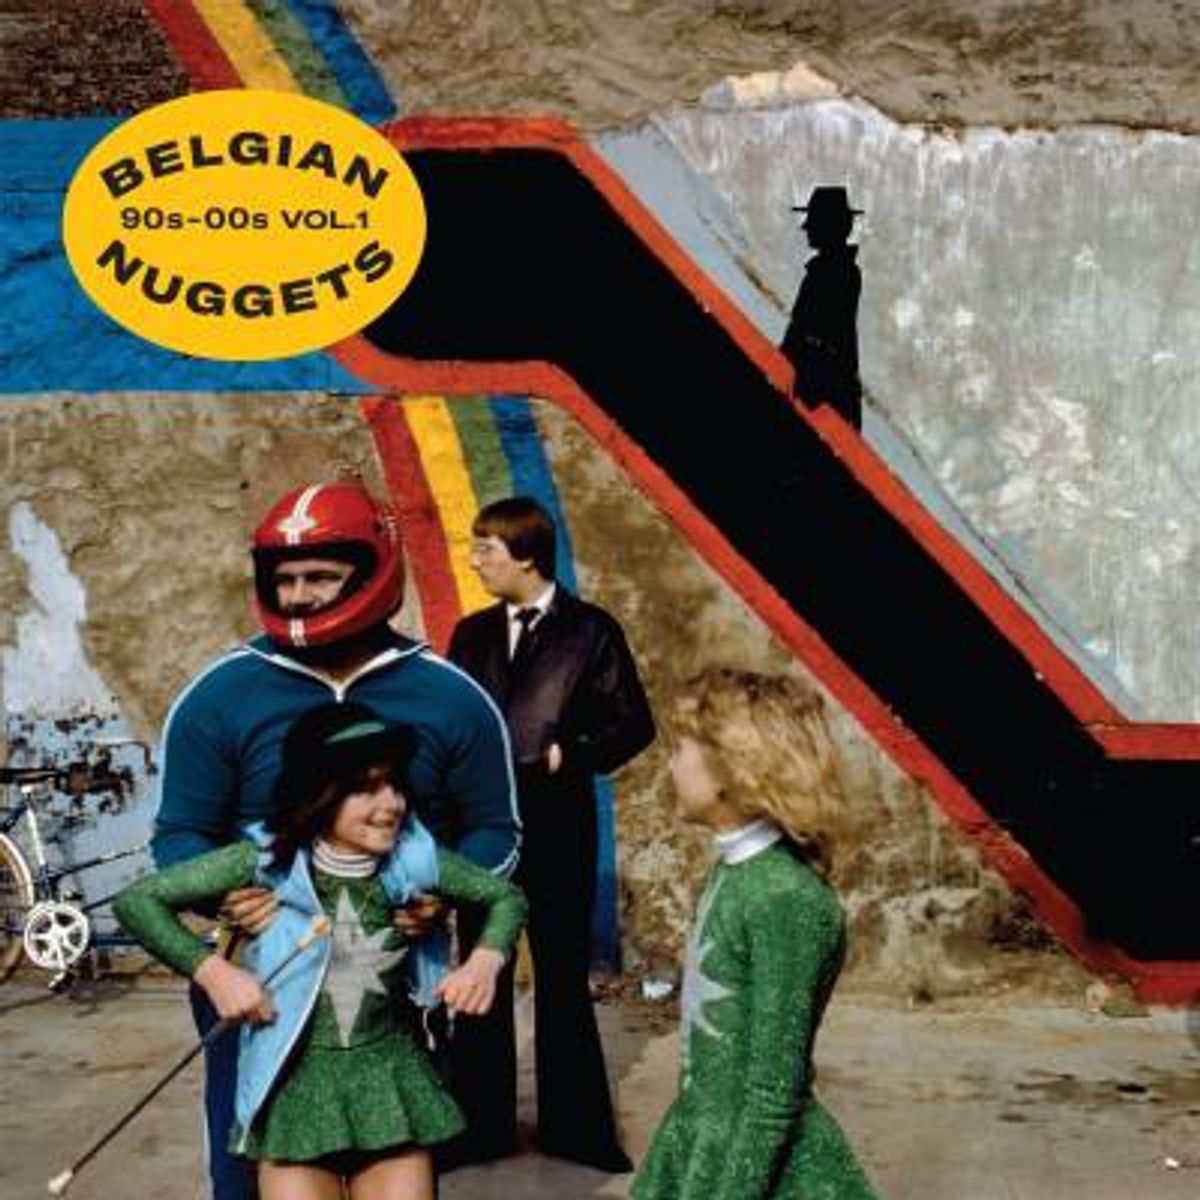 Belgian Nuggets 90s-00s Vol. 1